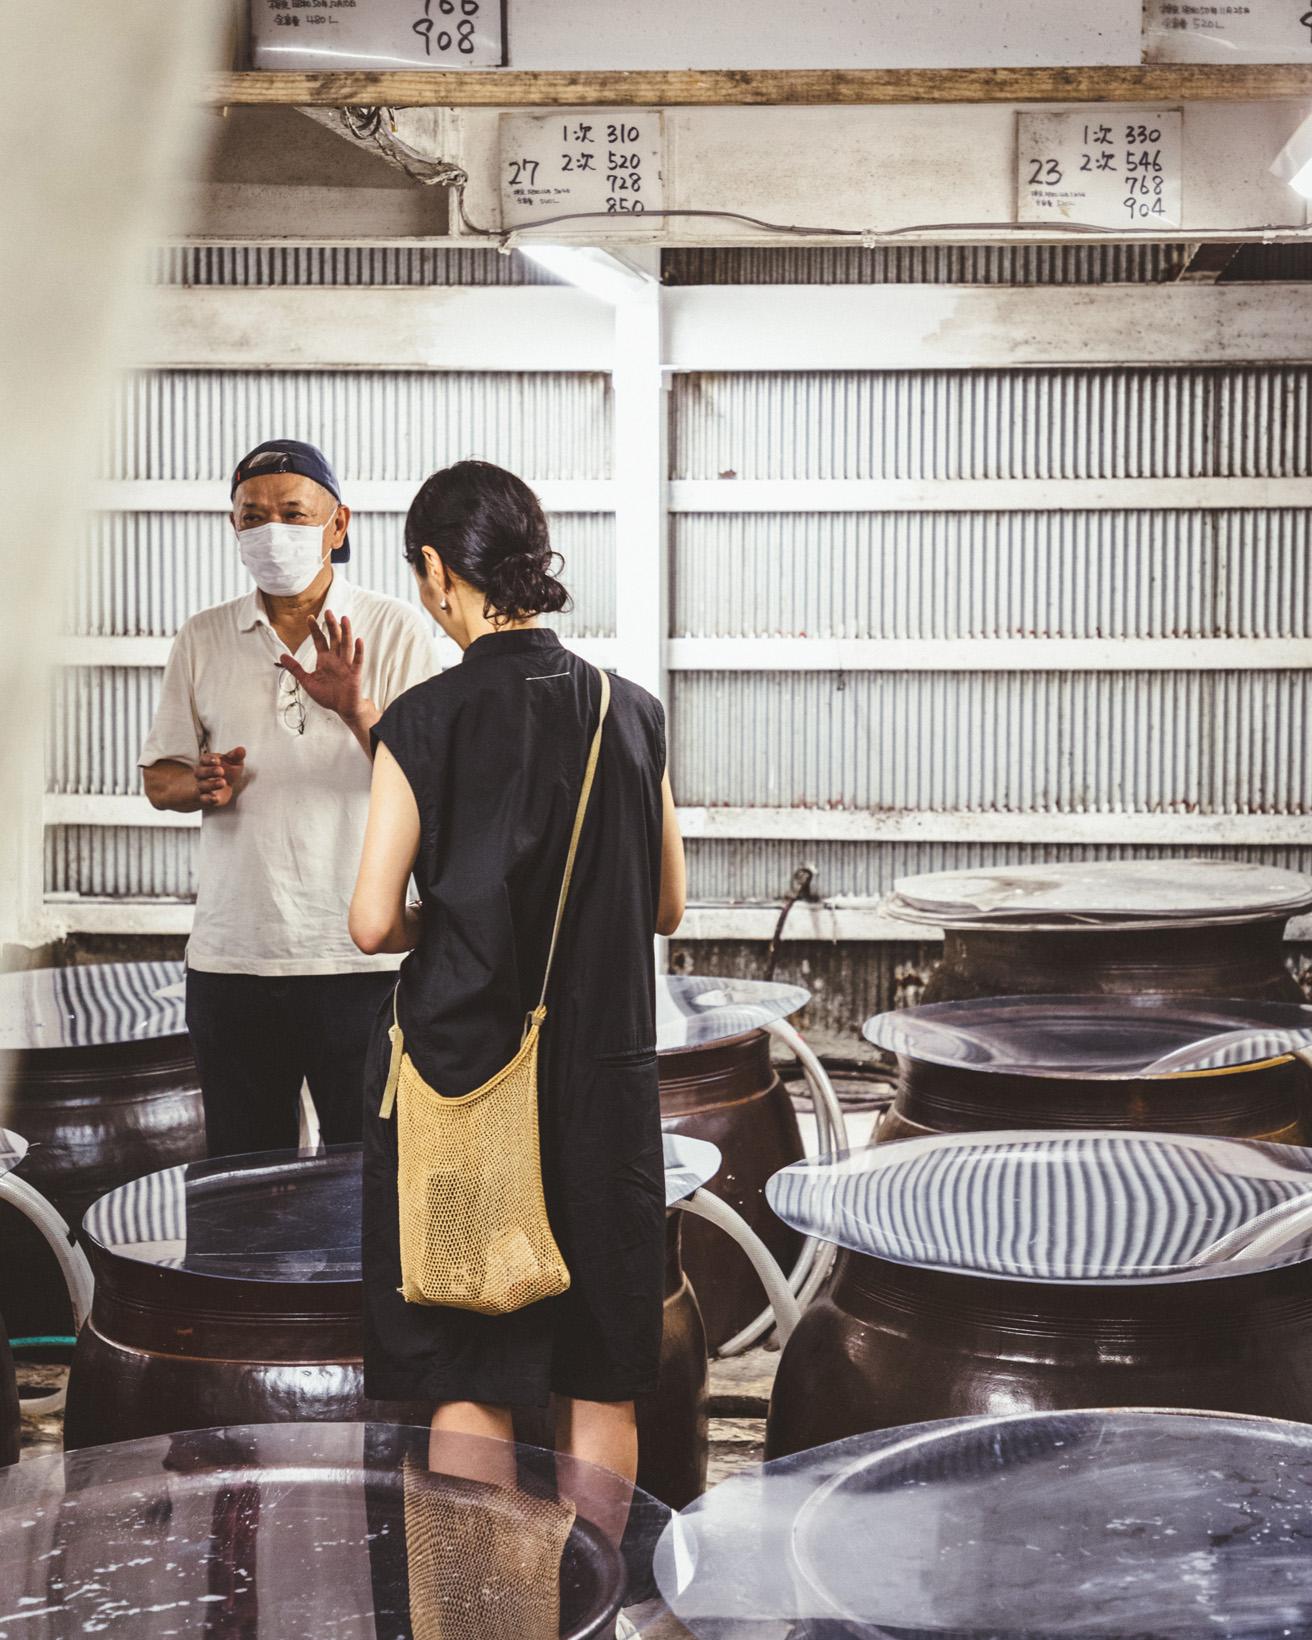 蔵では甕で発酵〜瓶に詰められるまでの焼酎造りの一連の流れを見学させてもらえる。